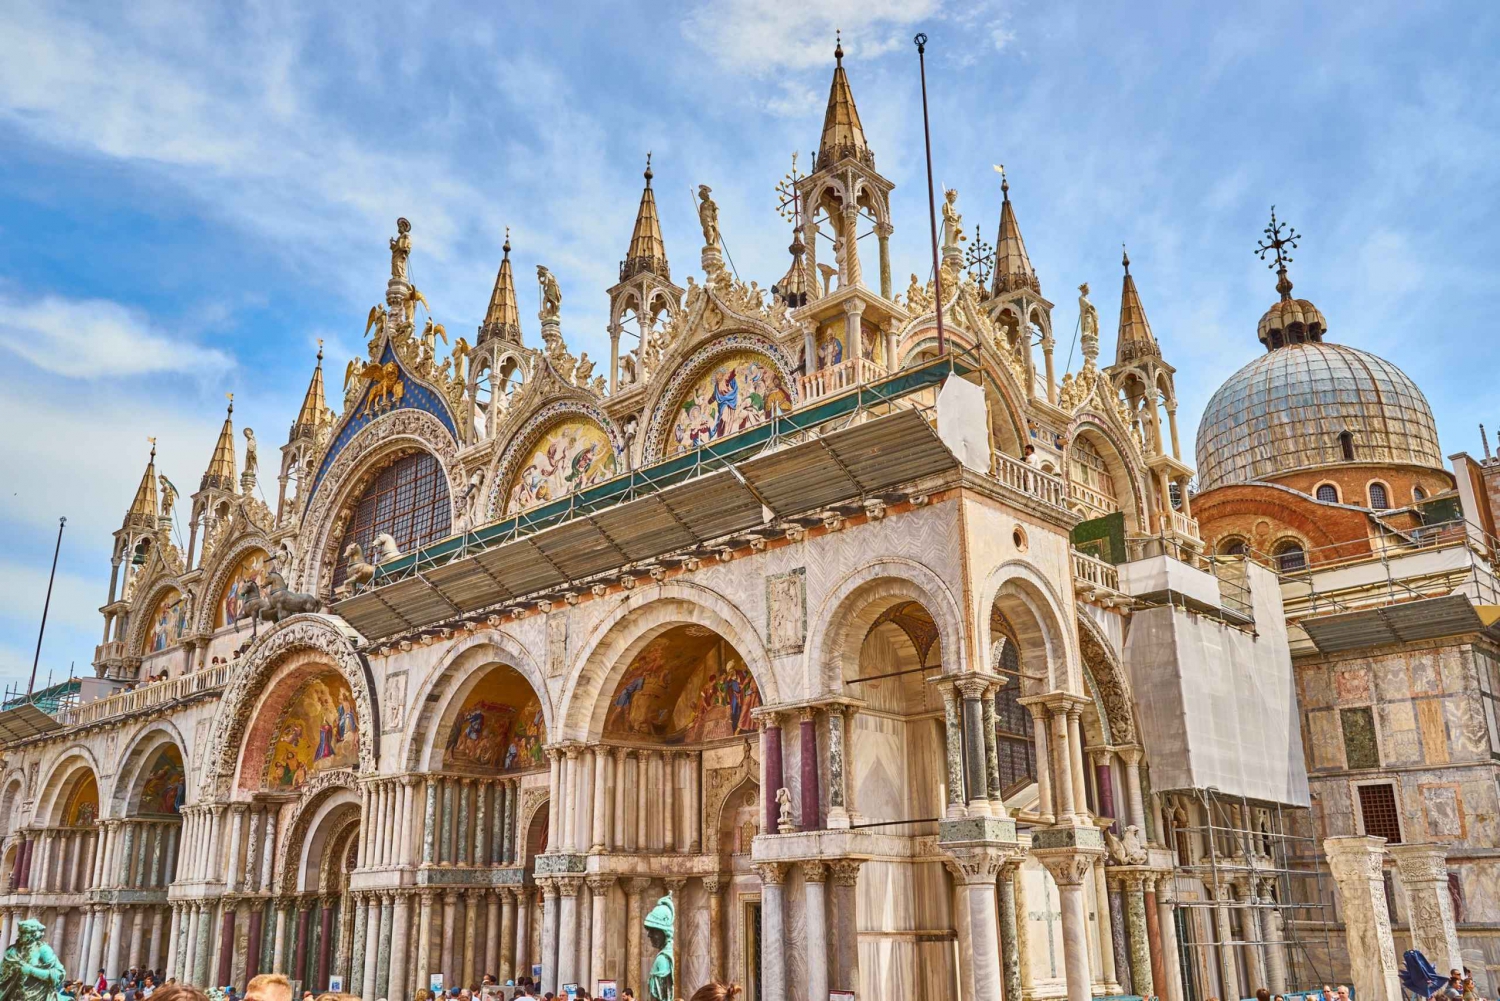 Venice: St. Mark's Basilica, Doge Palace, and Gondola Ride